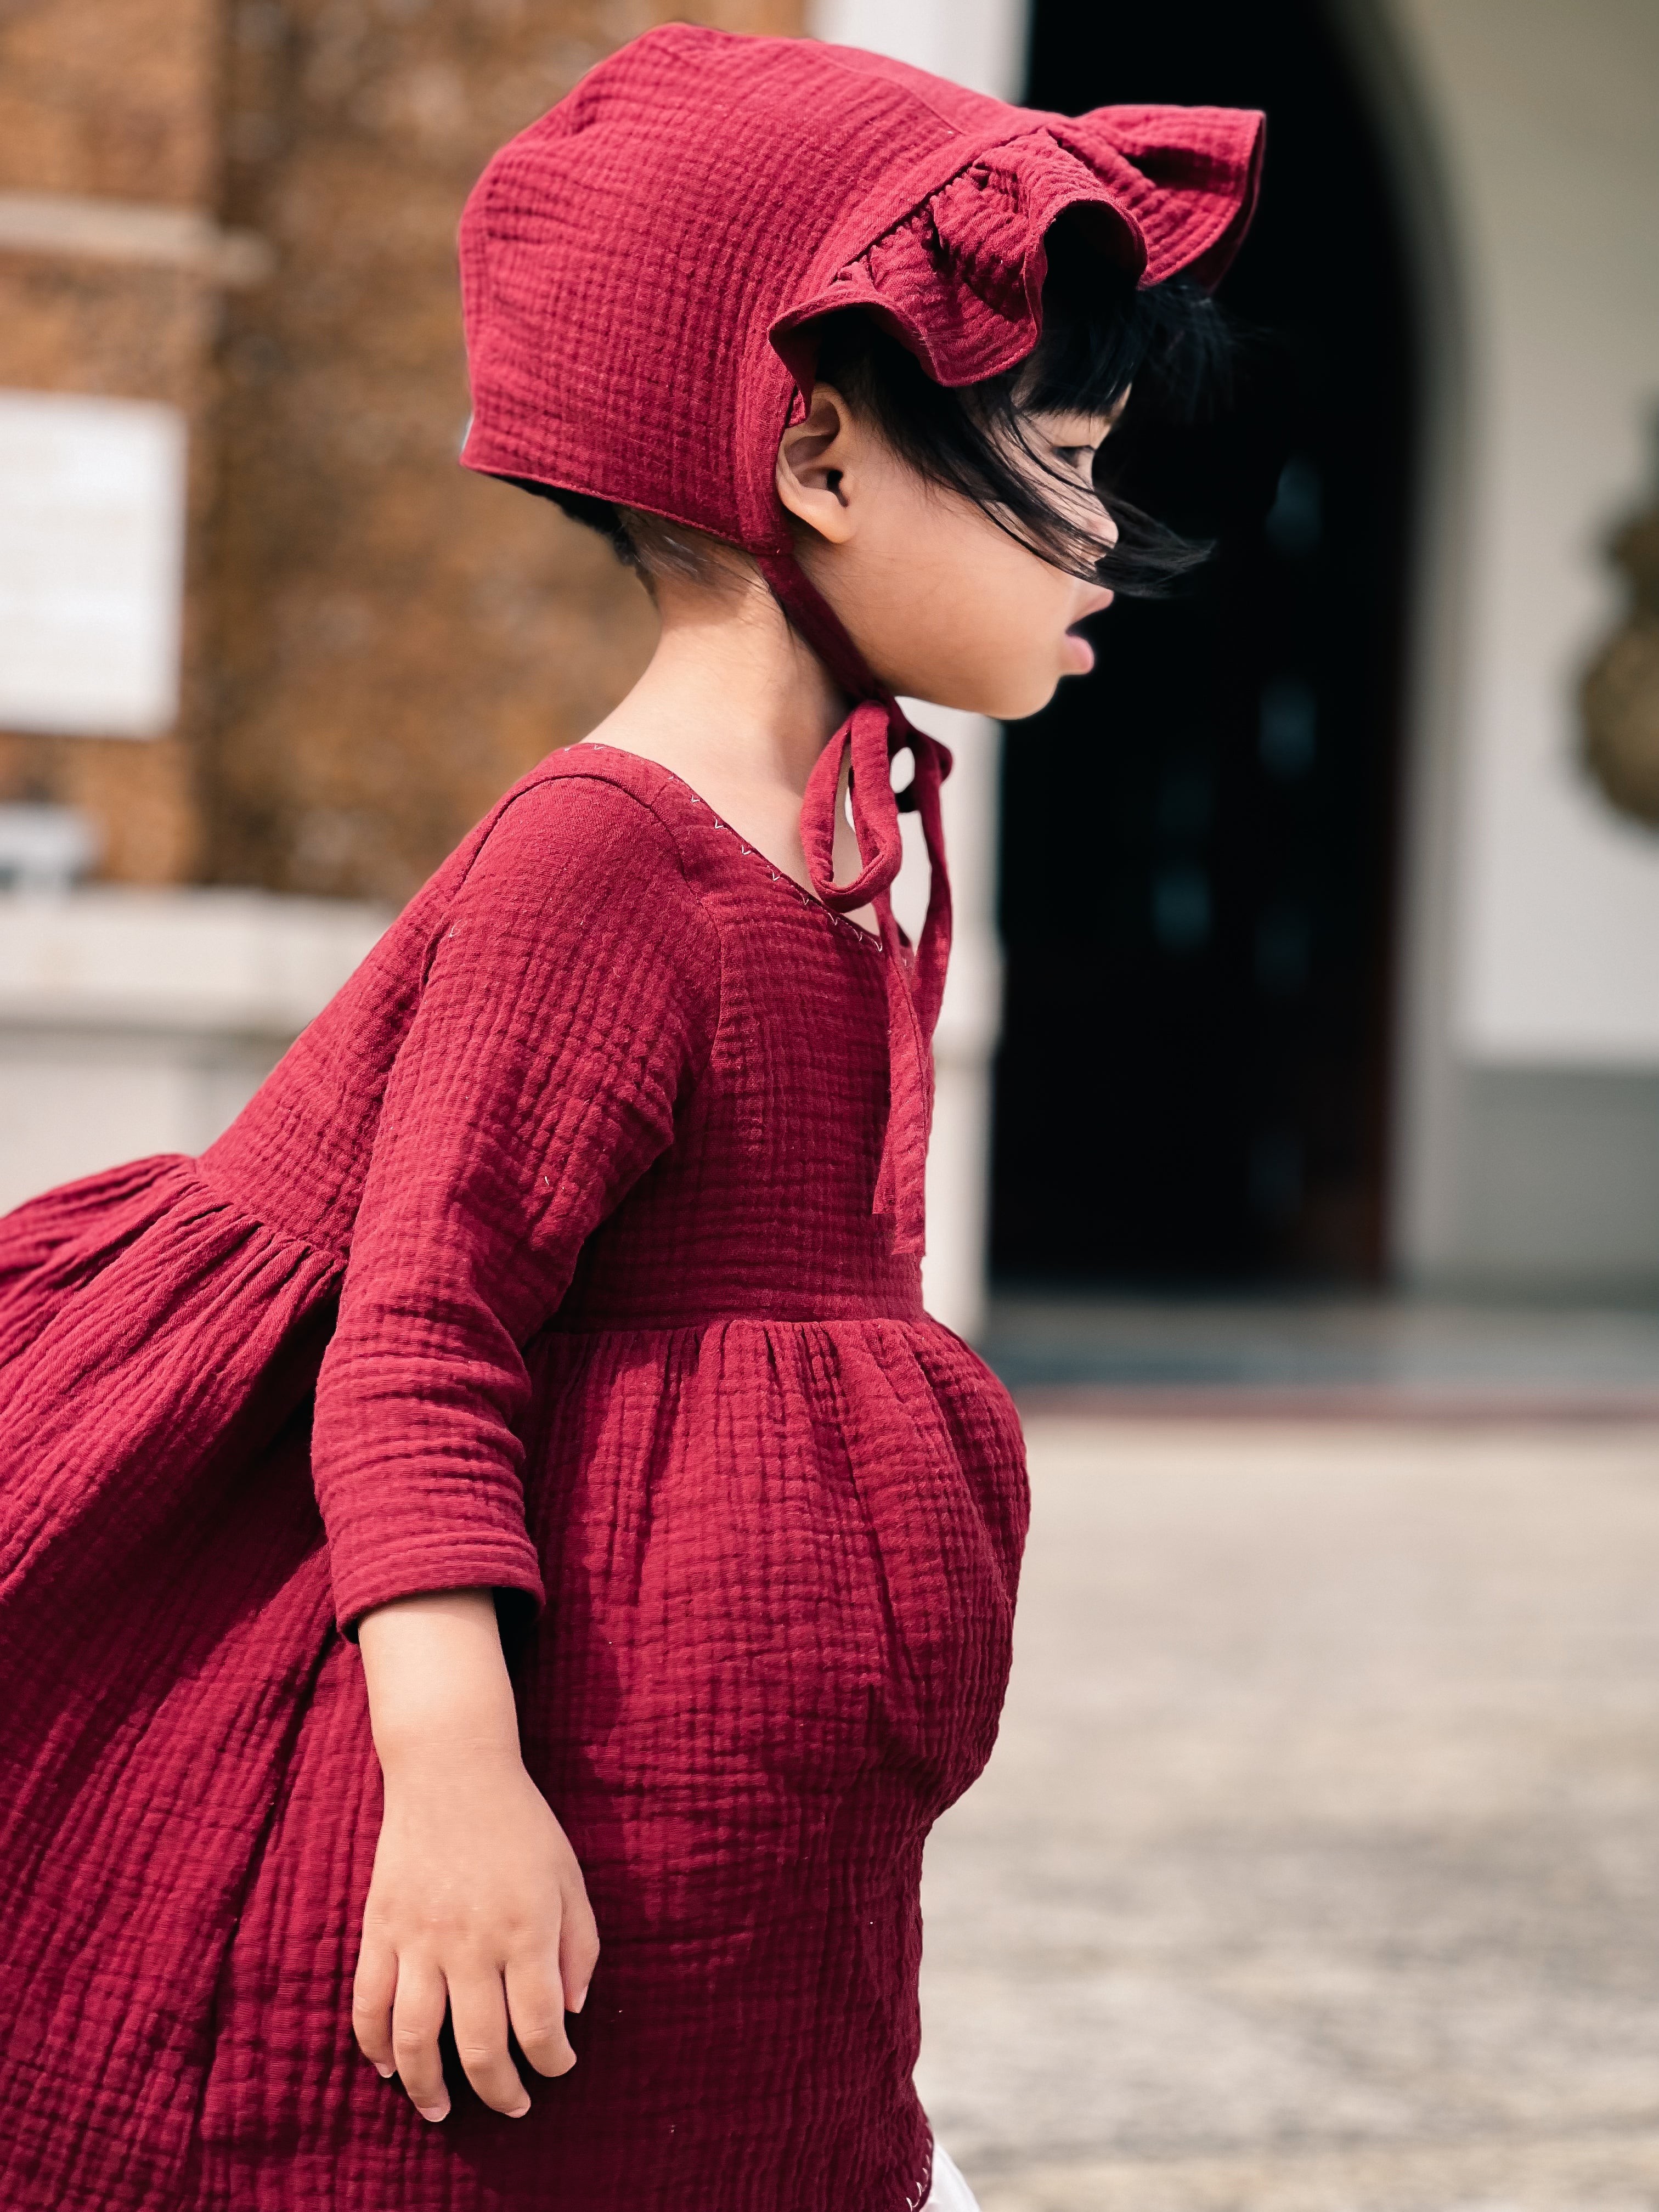 Móc Len) Hướng dẫn móc váy yếm len cho bé gái - Crochet - YouTube